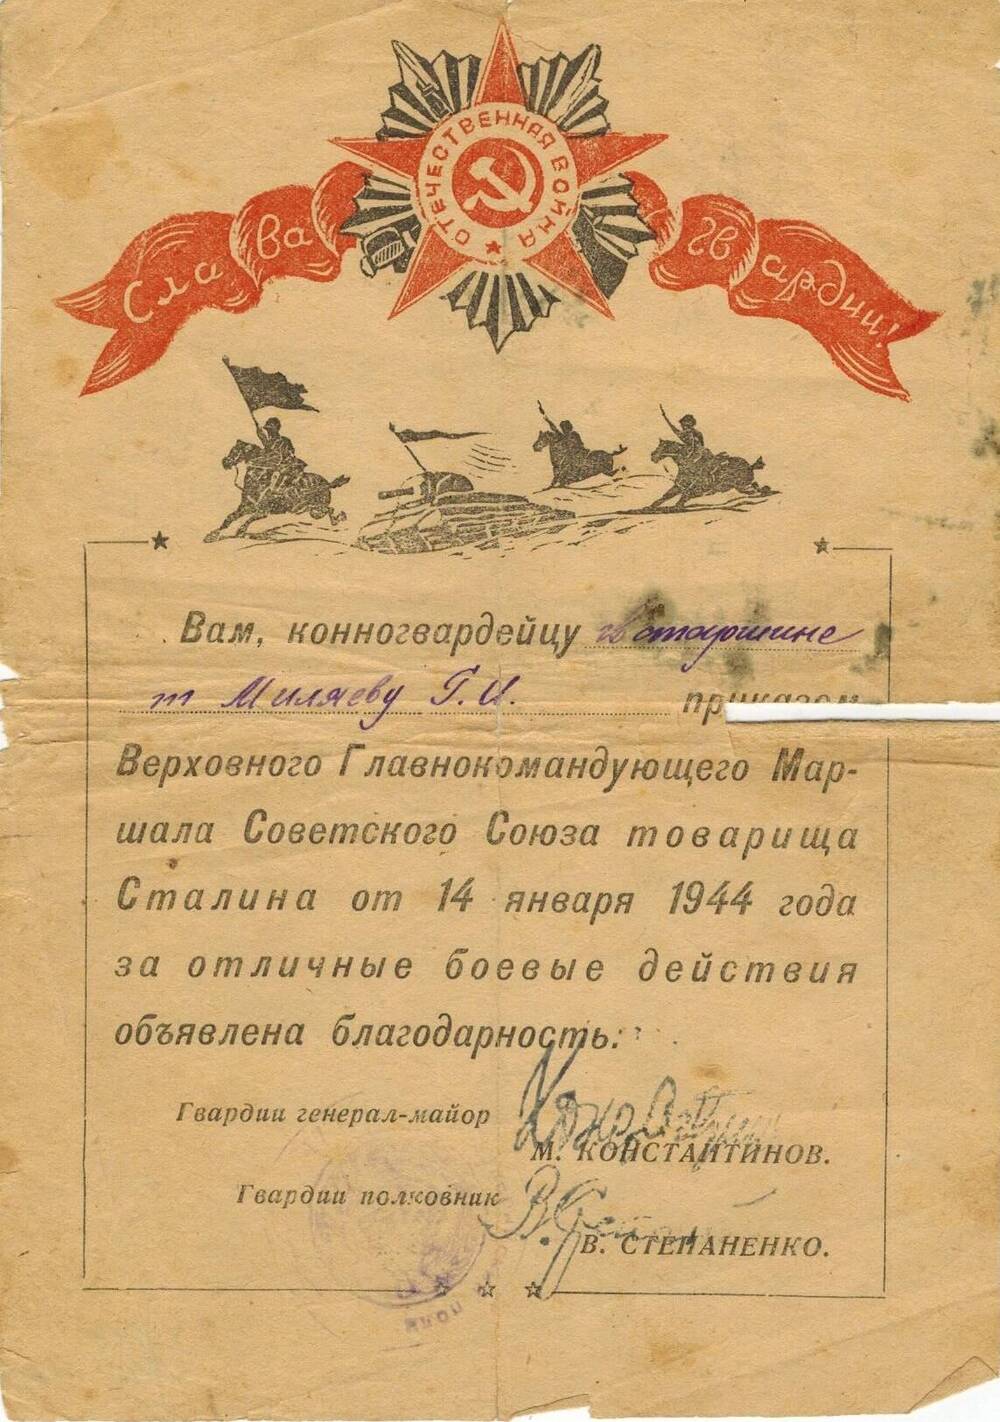 Благодарность Верховного Главнокомандующего Маршала советского союза т.Сталина от 14 января 1944 года за отличные боевые действия конногвардейцу гв. старшине Г.И. Миляеву